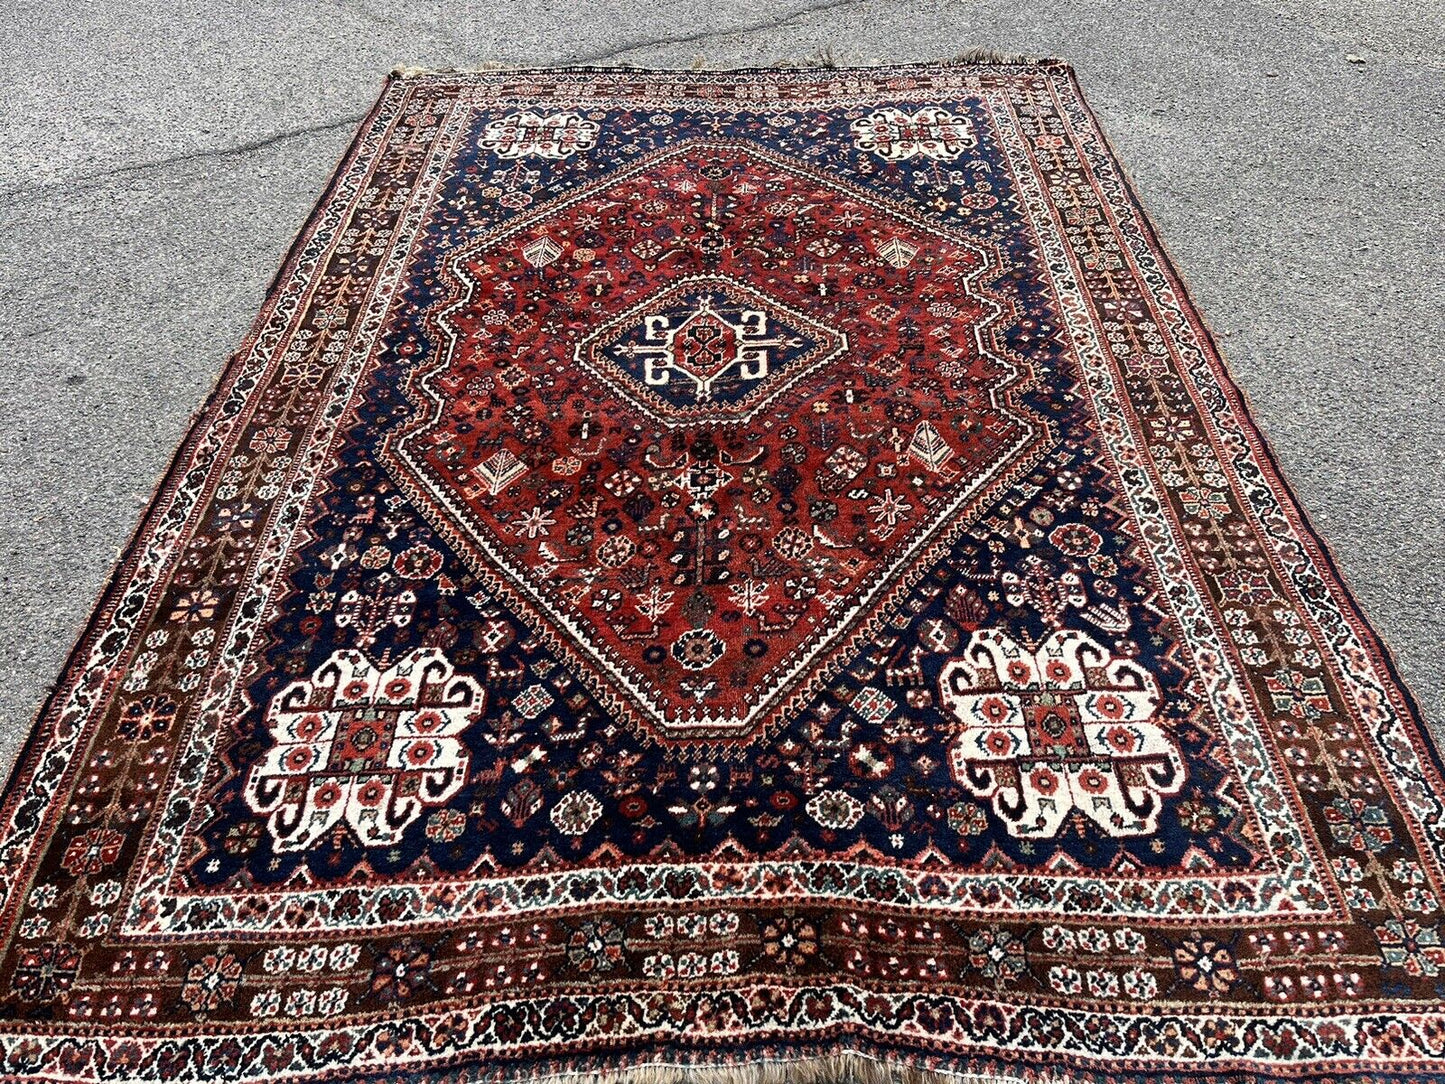 Rug, Carpet 256 X 170 Cms